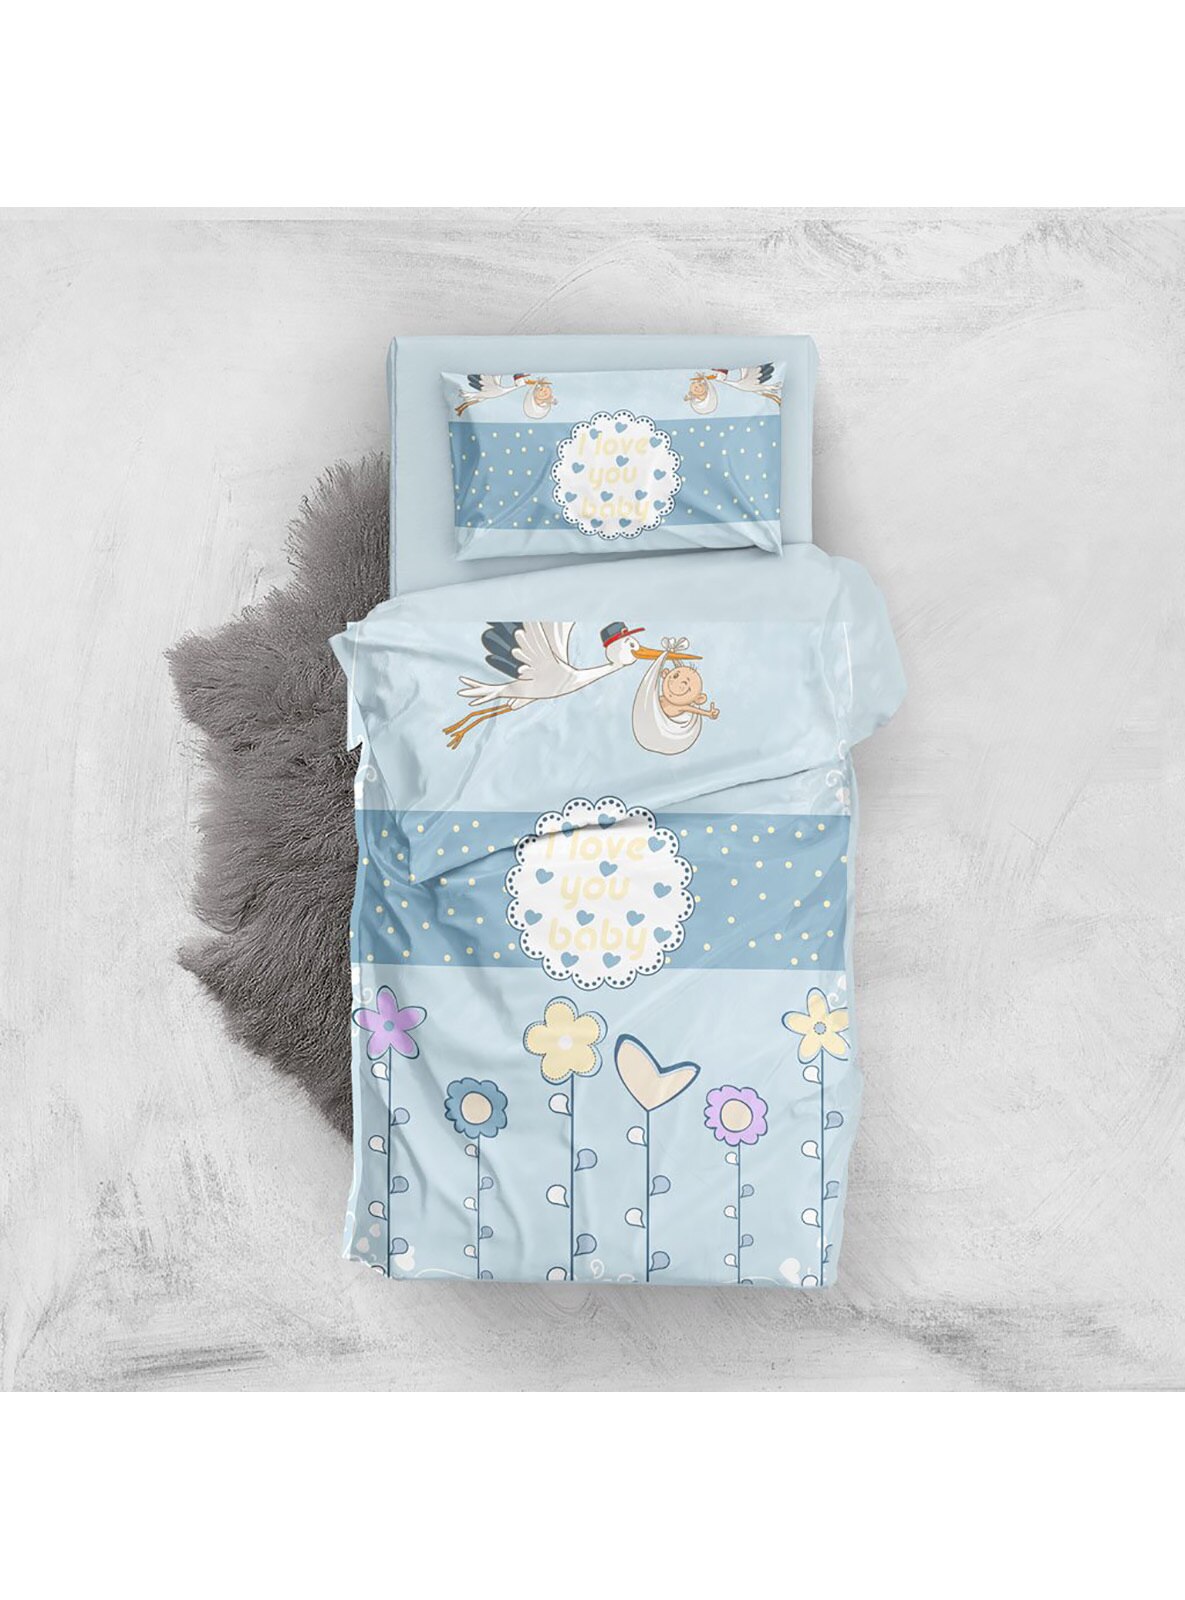 Multi - Cotton - 1000gr - Child Bed Linen